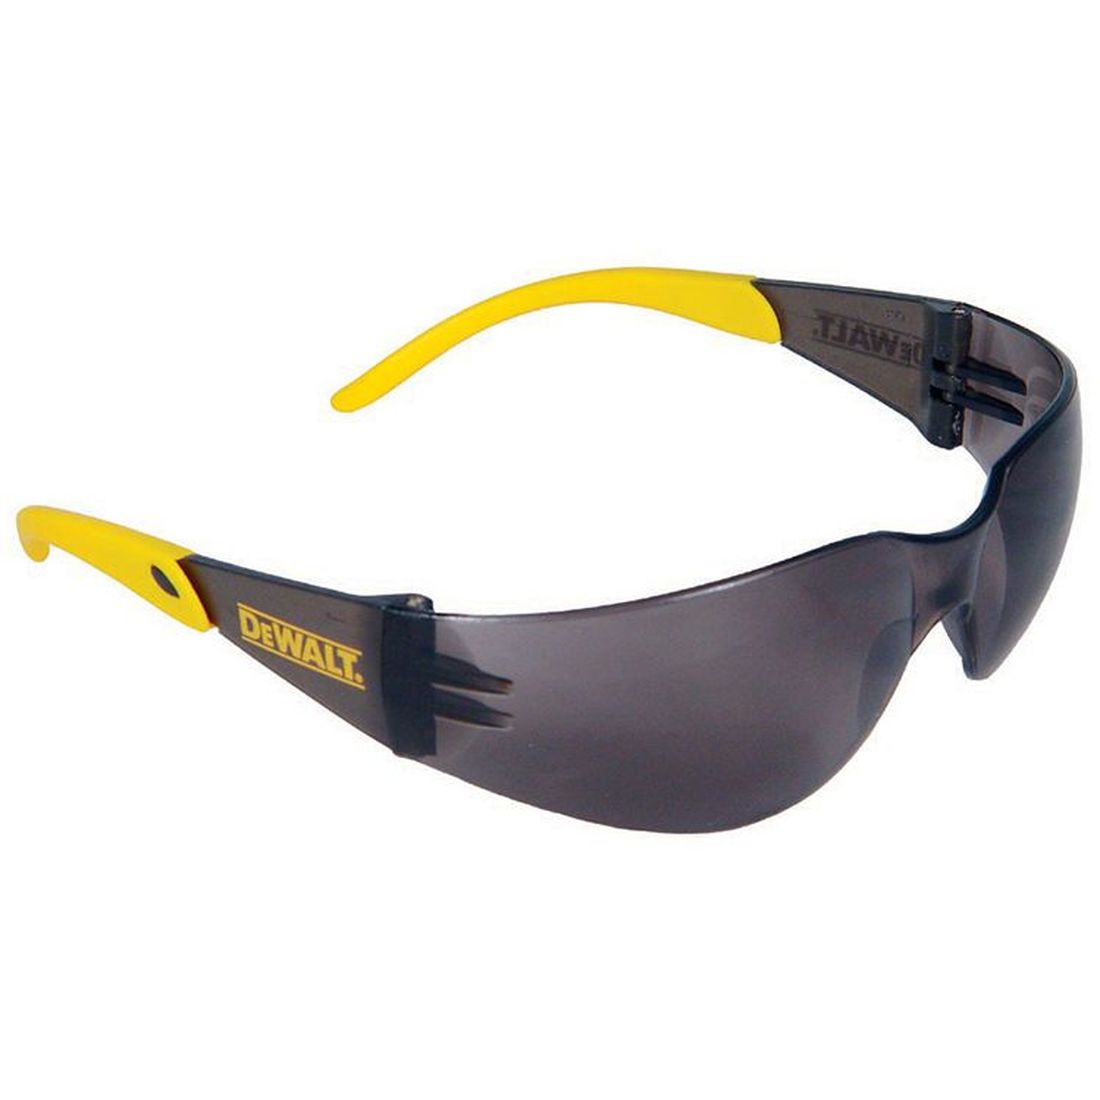 DEWALT Protector Safety Glasses - Smoke 